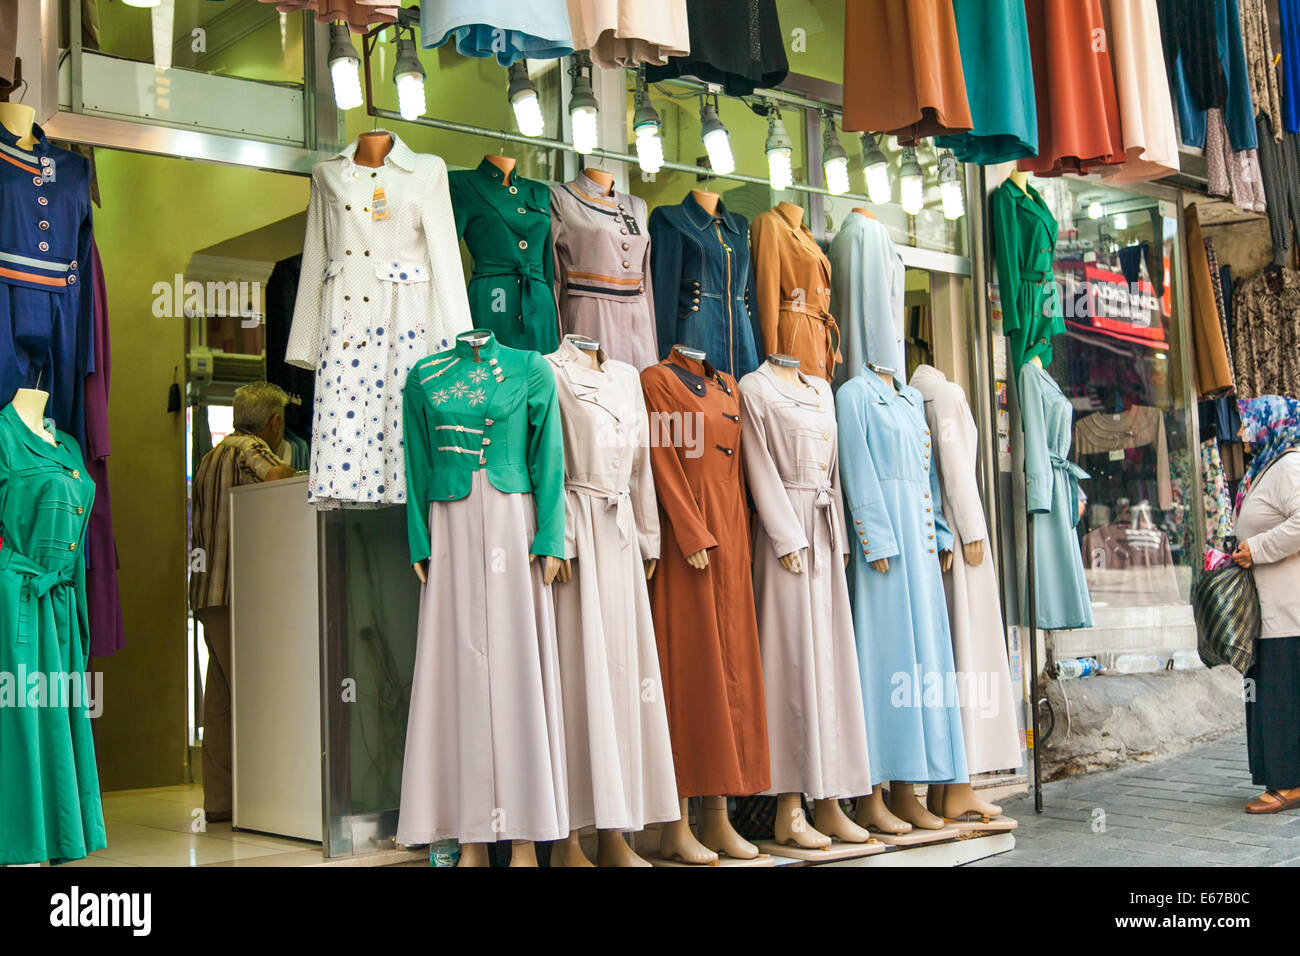 Traditionelle muslimische Kleidung in einem Markt Shop in Istanbul  Stockfotografie - Alamy